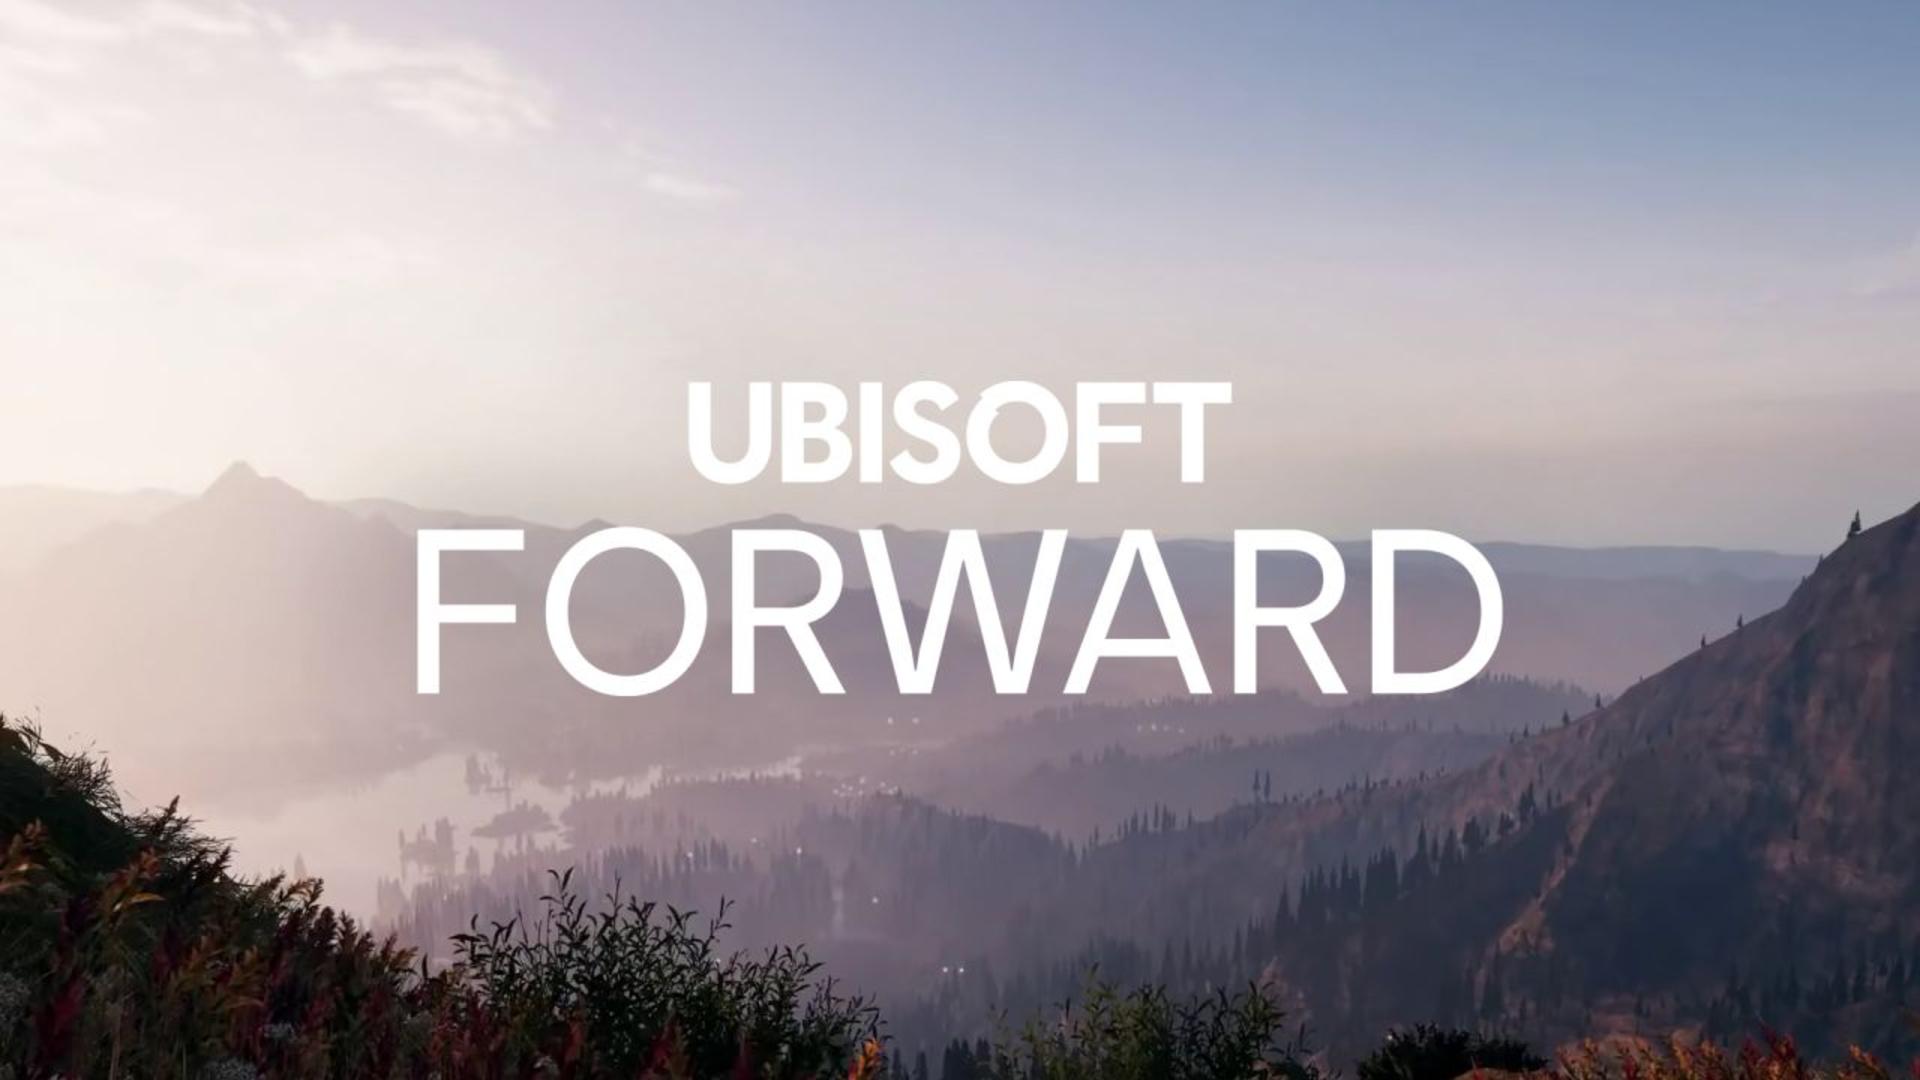 Ubisoft forward será o evento online em julho | f19f21a1 ubisoft forward | emicida | ubisoft forward emicida